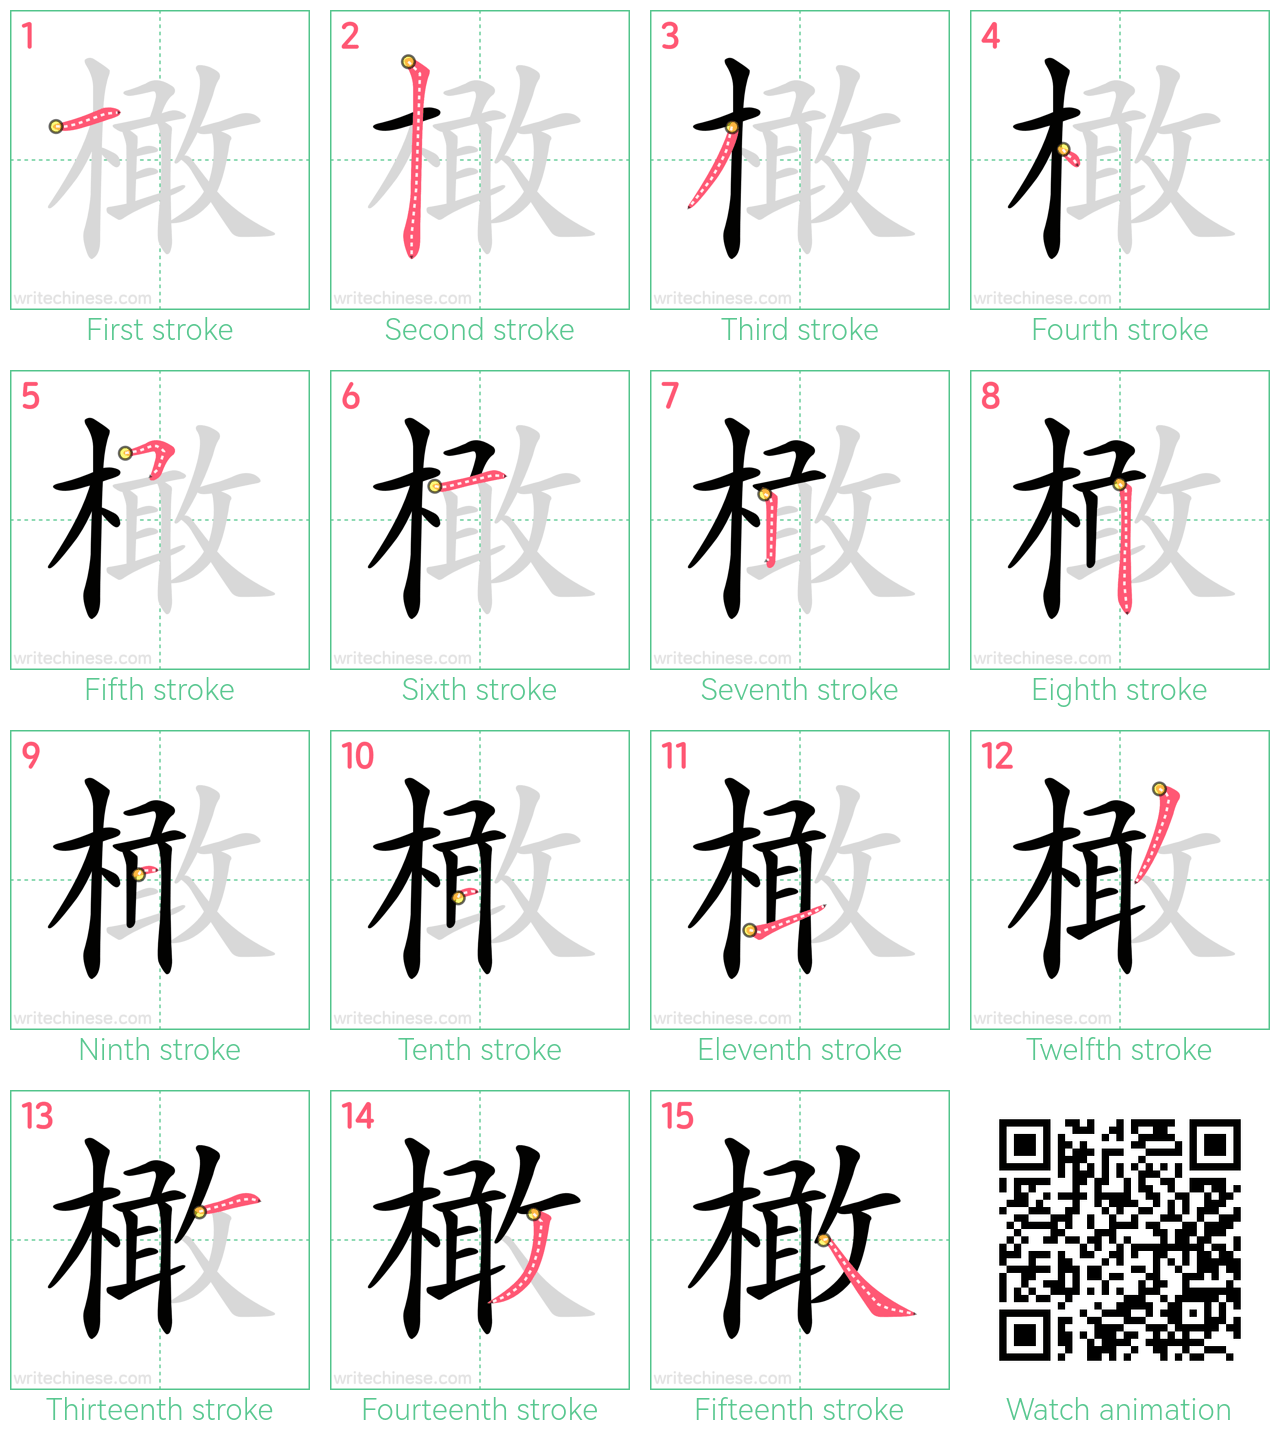 橄 step-by-step stroke order diagrams